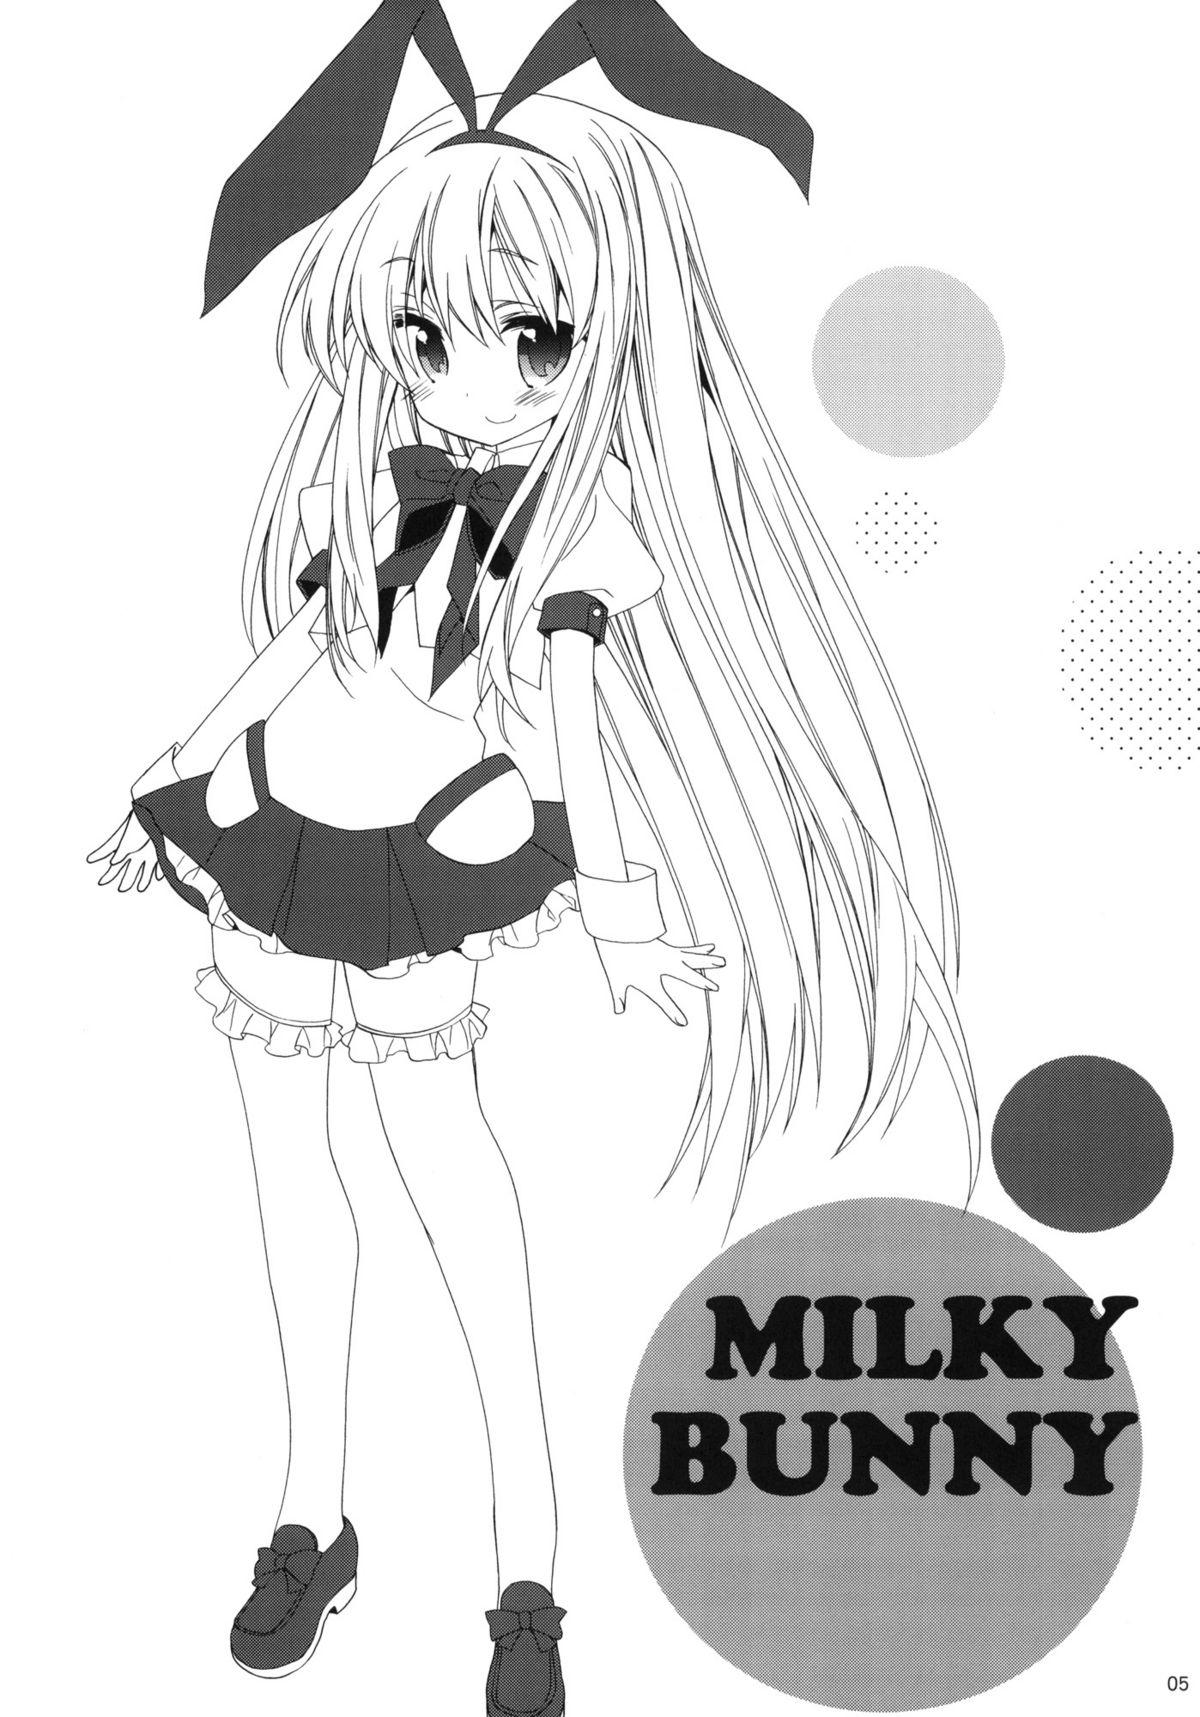 MILKY BUNNY Page 4 Of 30 hentai manga, MILKY BUNNY Page 4 Of 30 hentai comi...